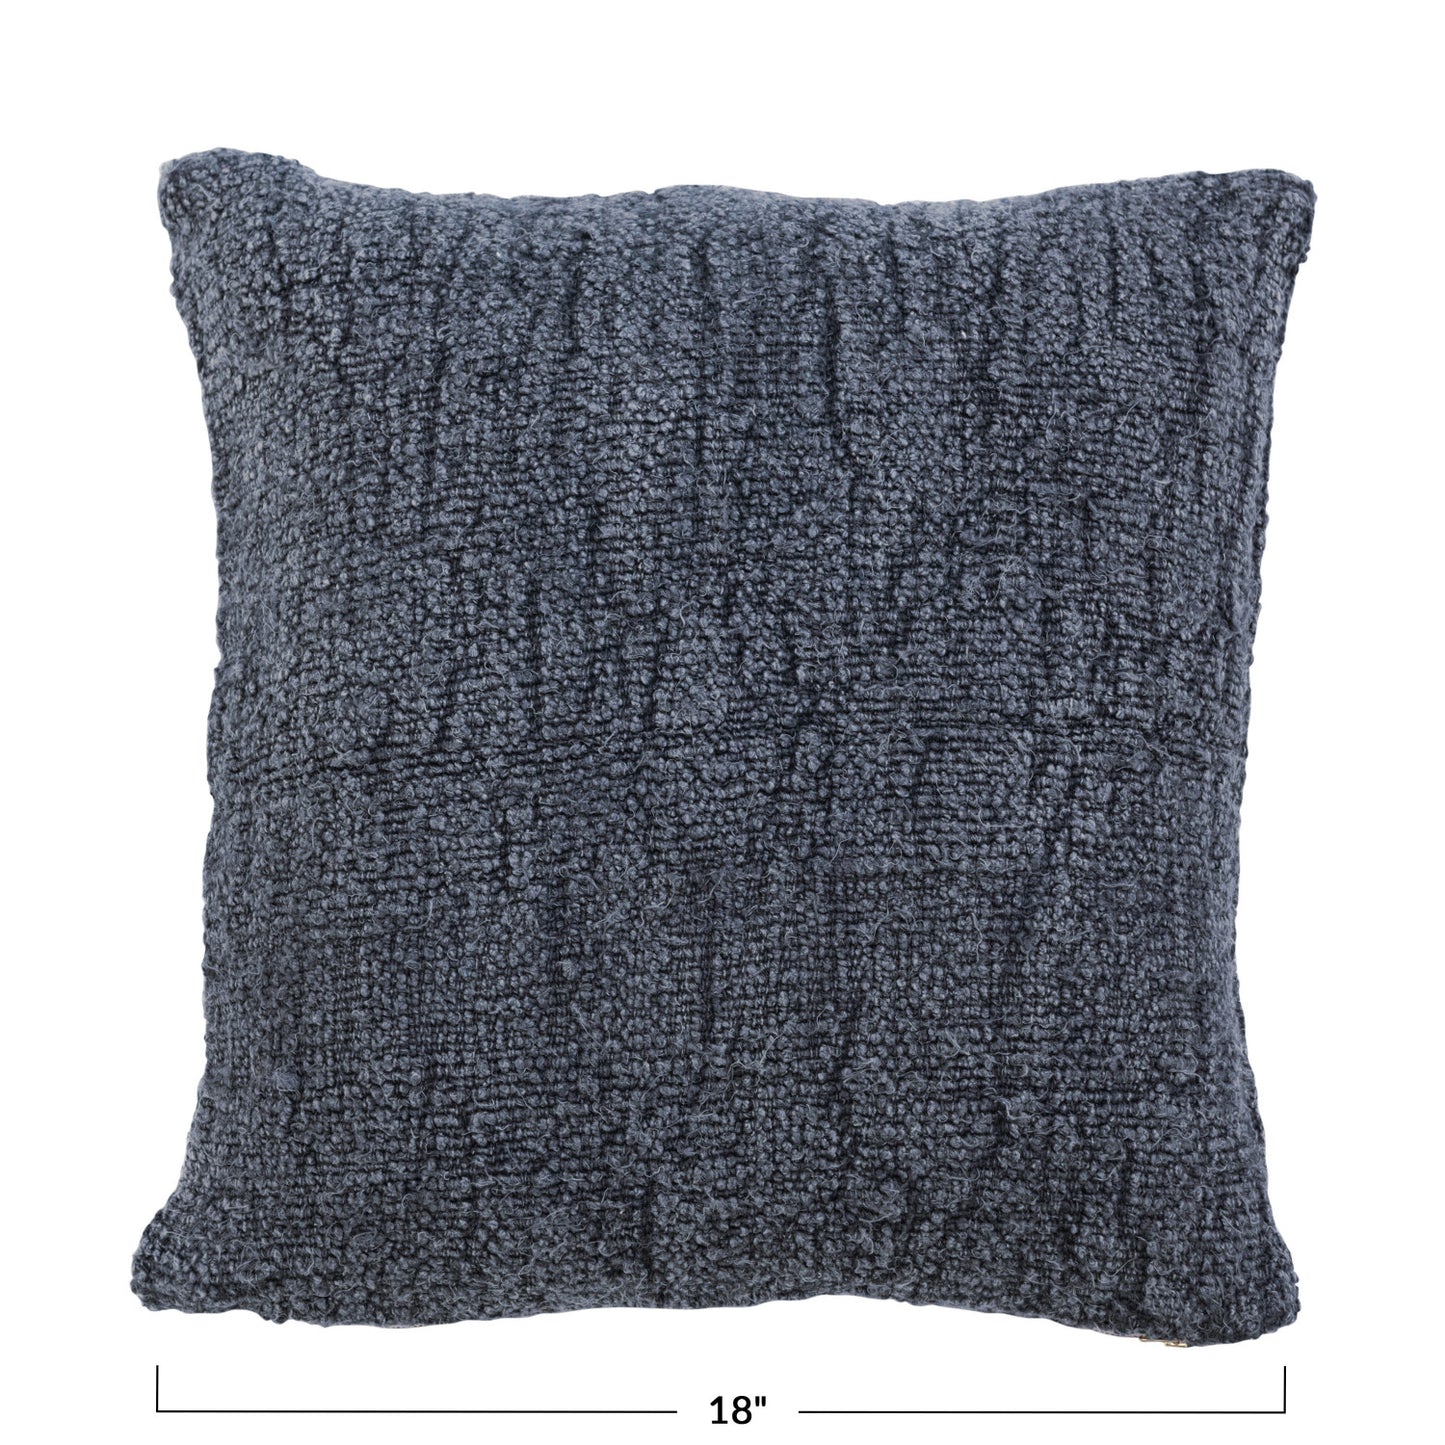 18" Stonewashed Silk & Woven Cotton Pillow